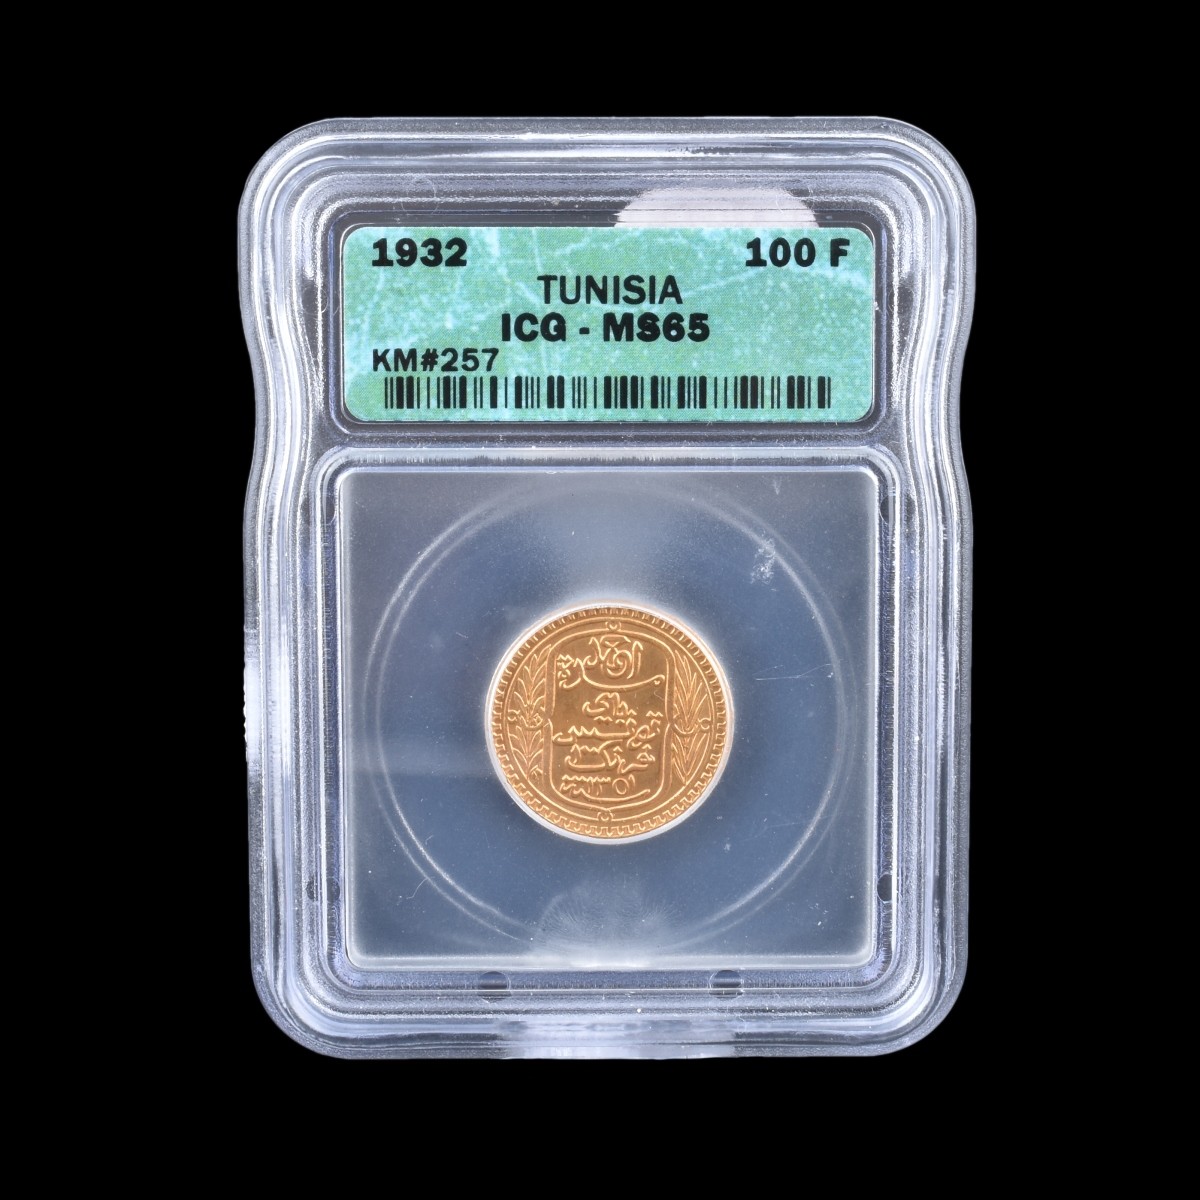 1932 Tunisia Gold 100 Francs